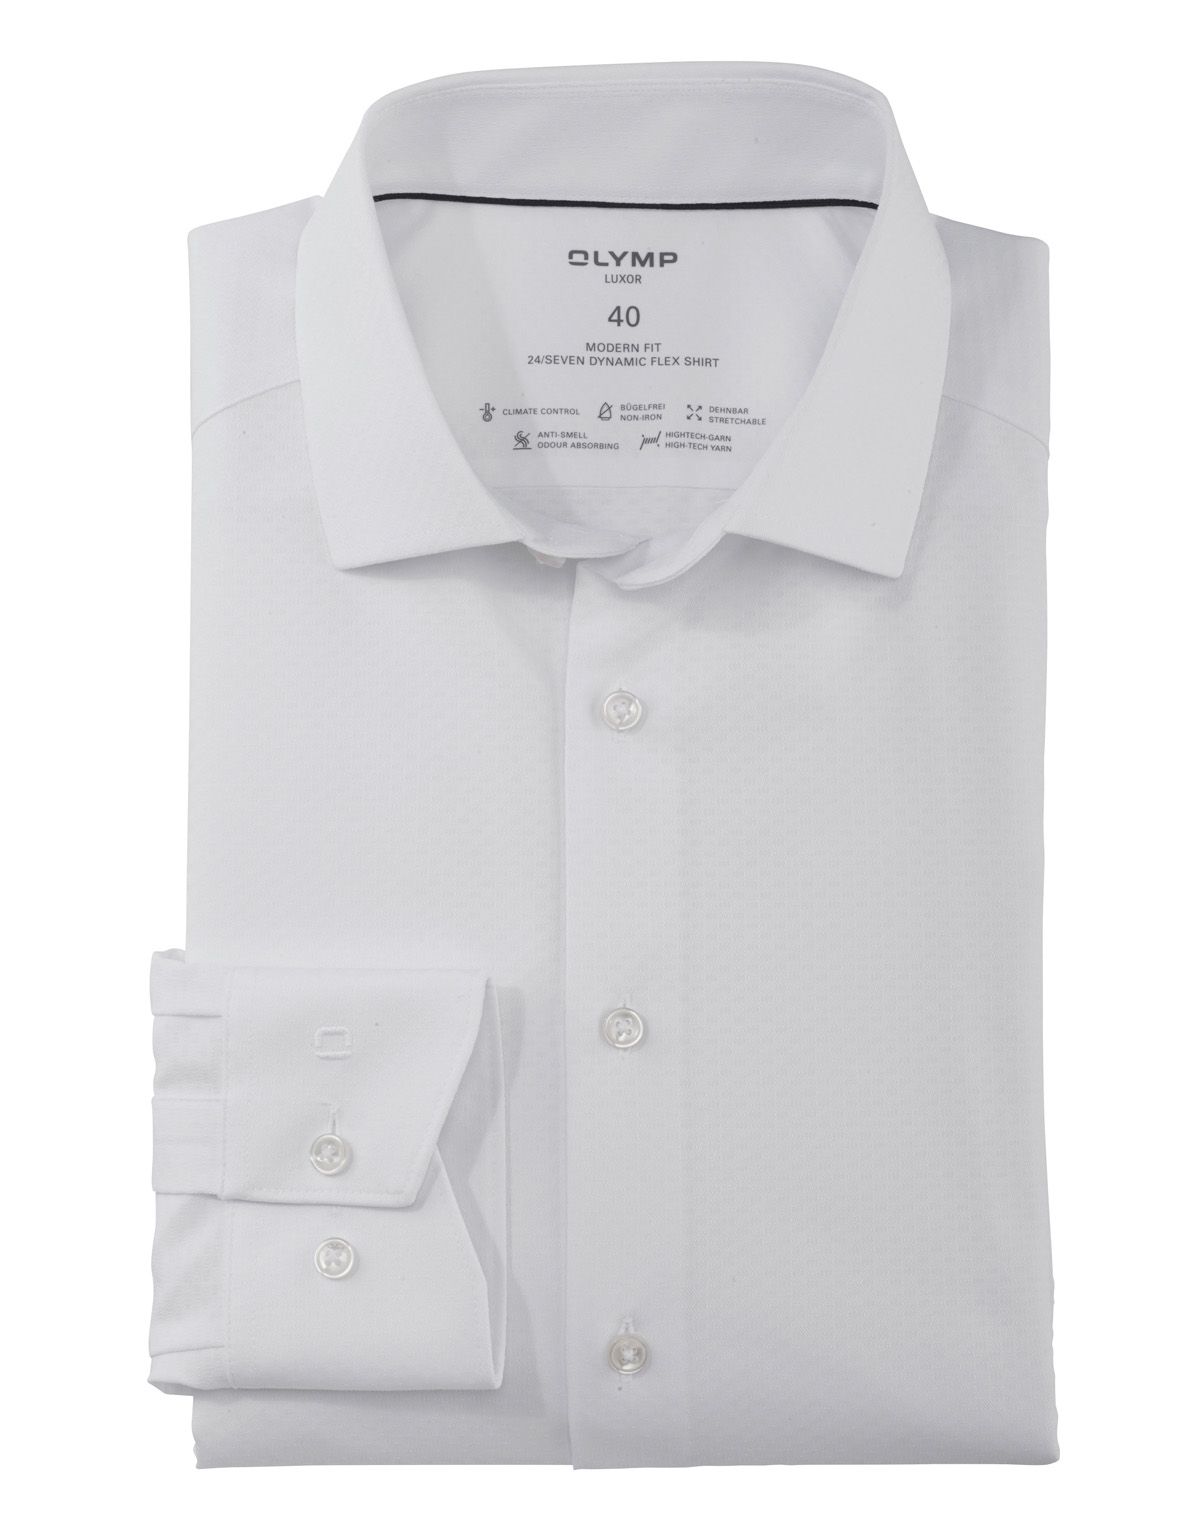 Рубашка белая классическая OLYMP Luxor 24/7, modern fit, климат контроль[БЕЛЫЙ]